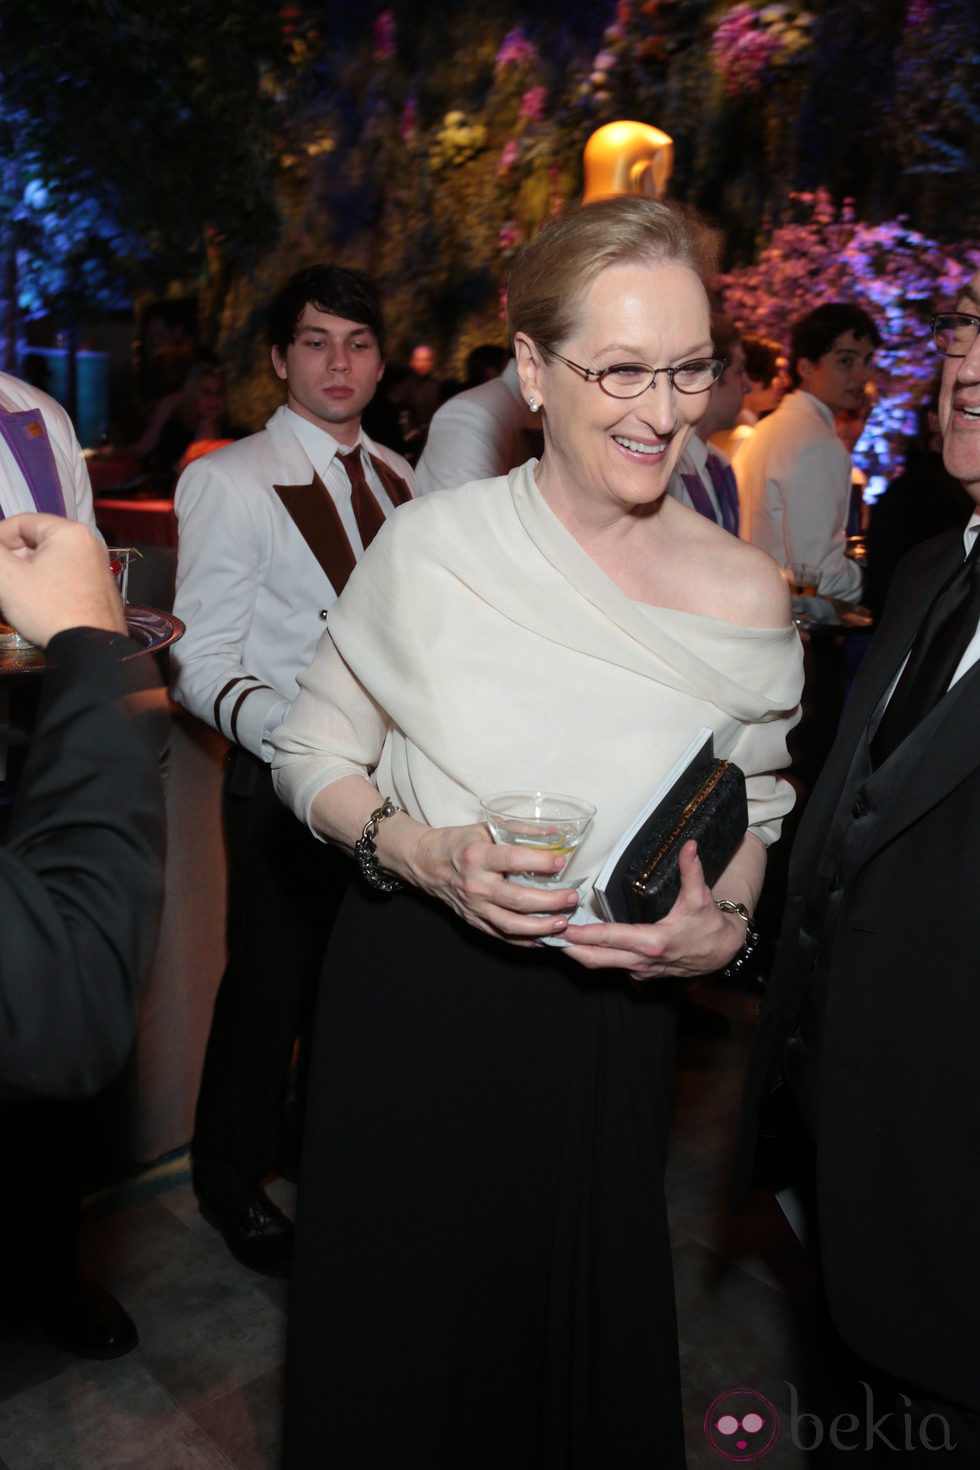 Meryl Streep en la fiesta Governors Ball tras los Oscar 2014